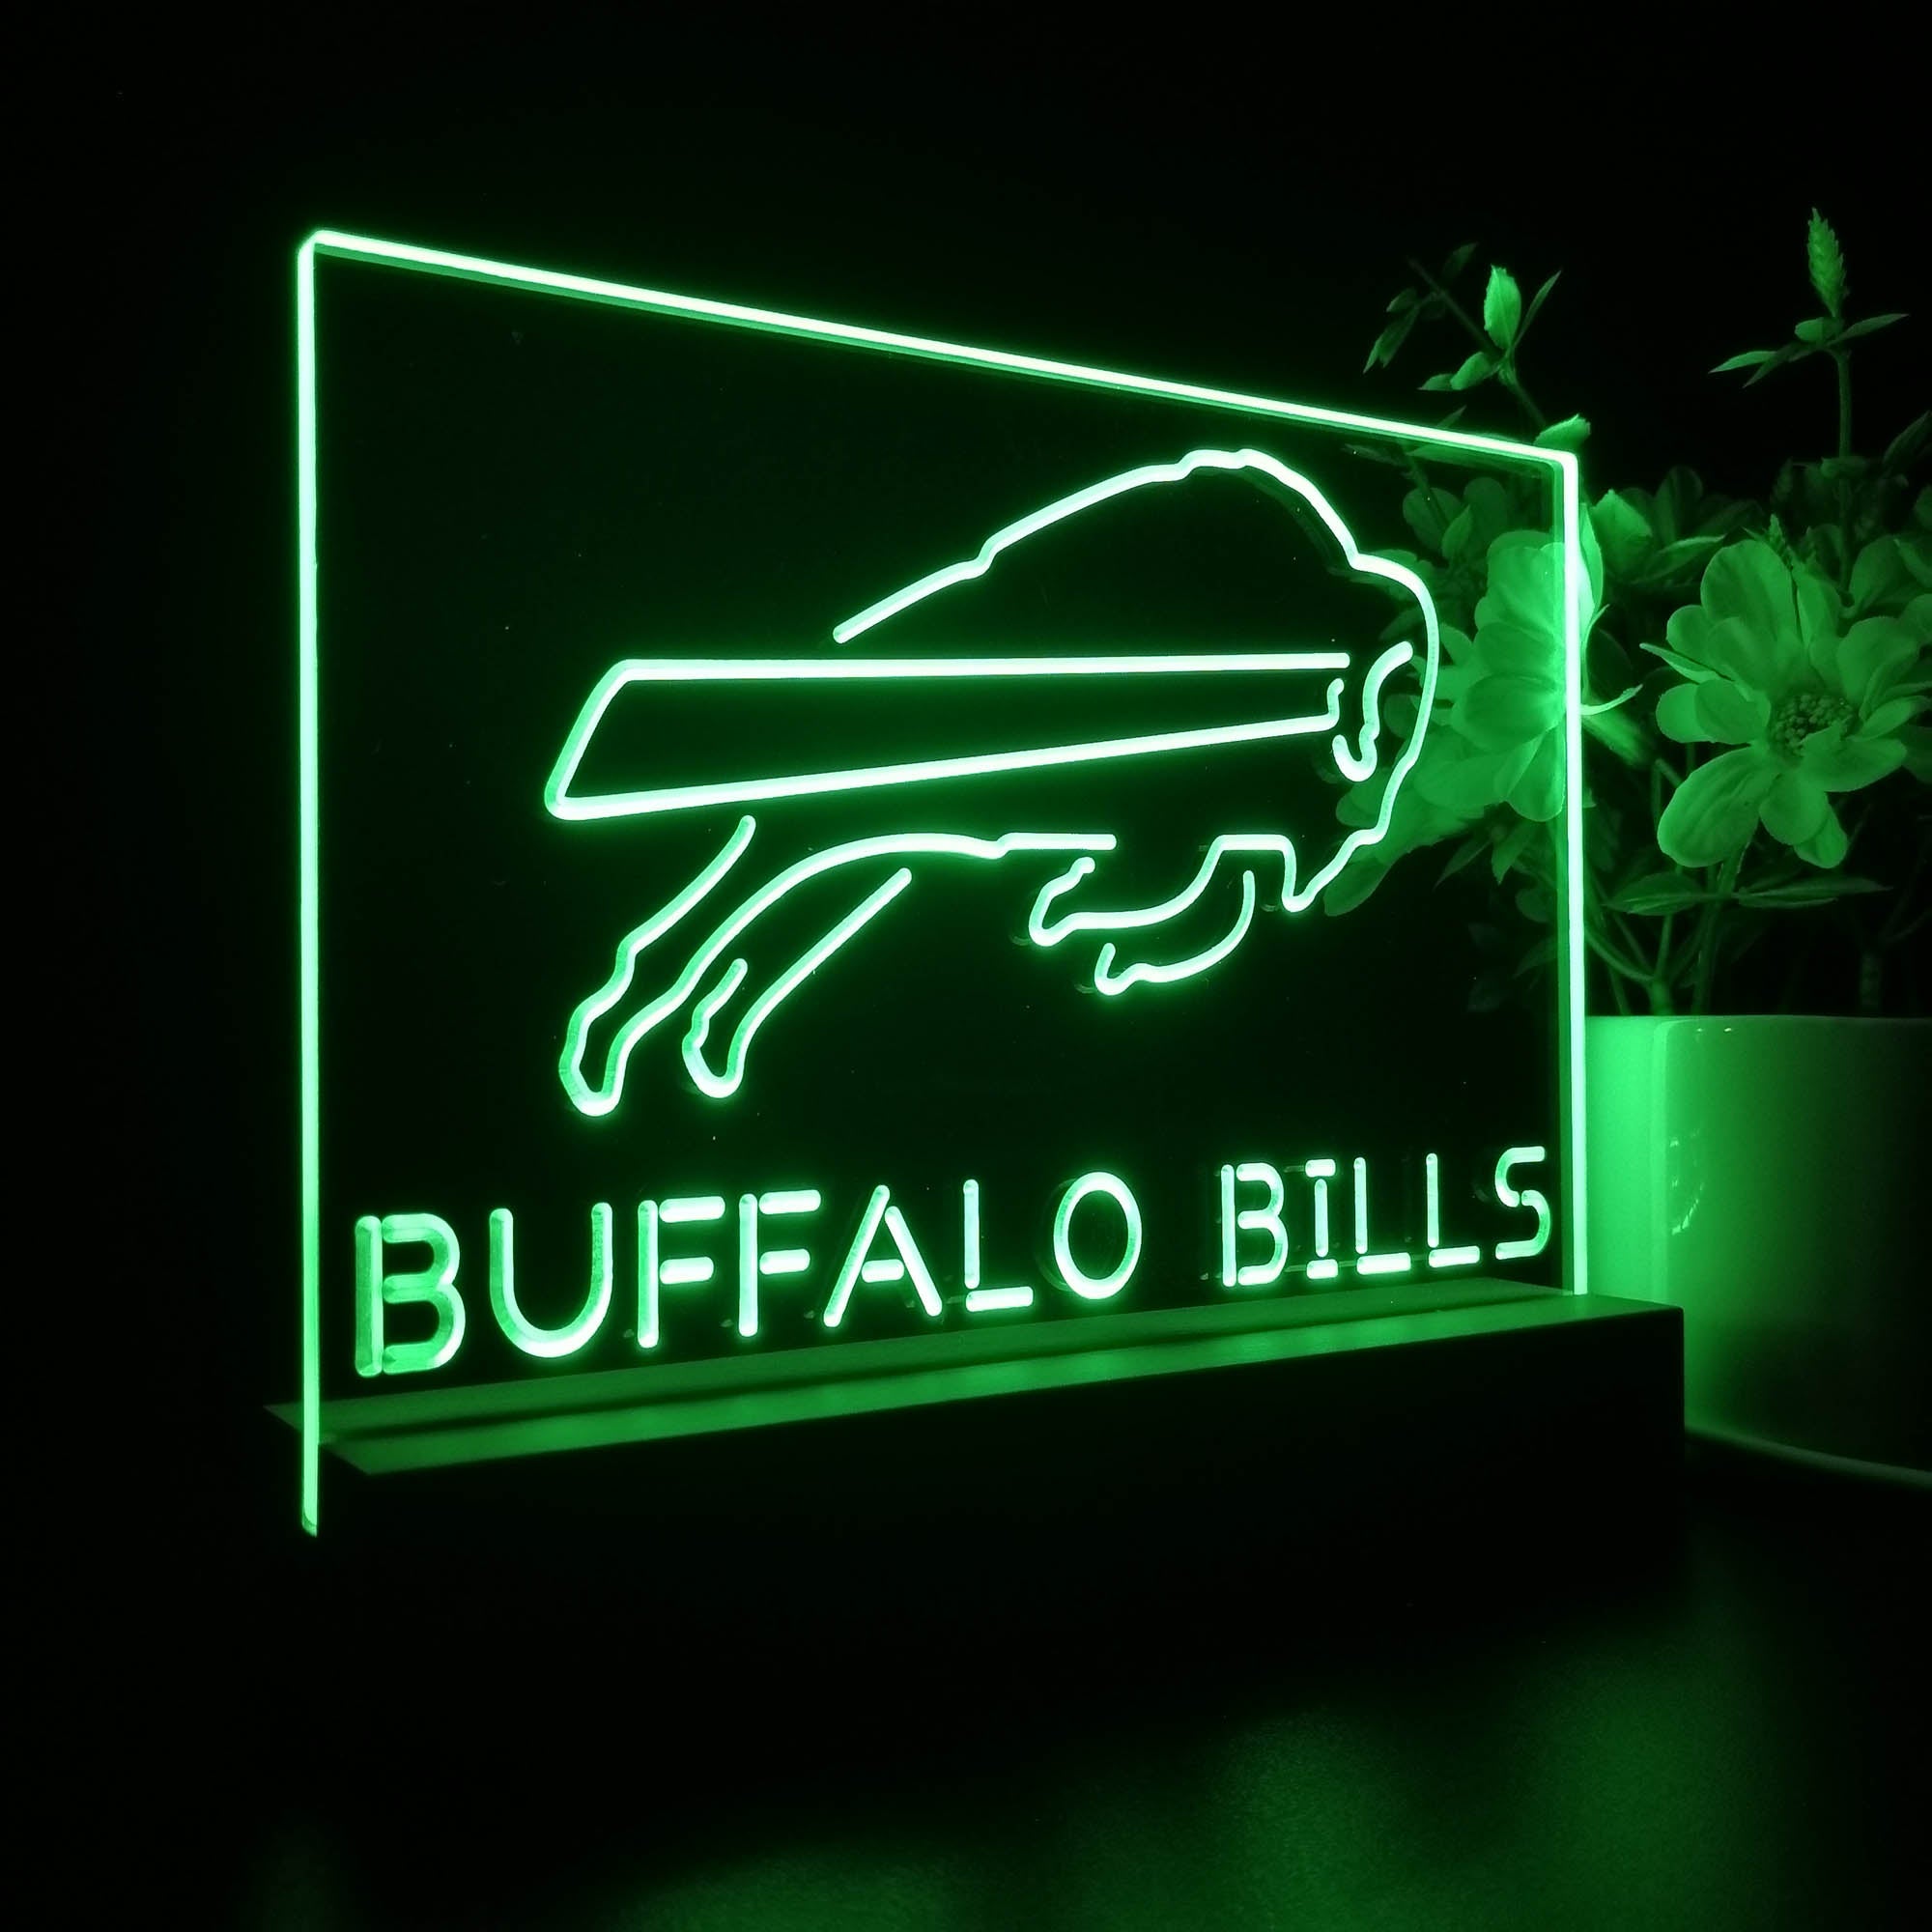 Buffalo Bills Neon Sign Pub Bar Lamp